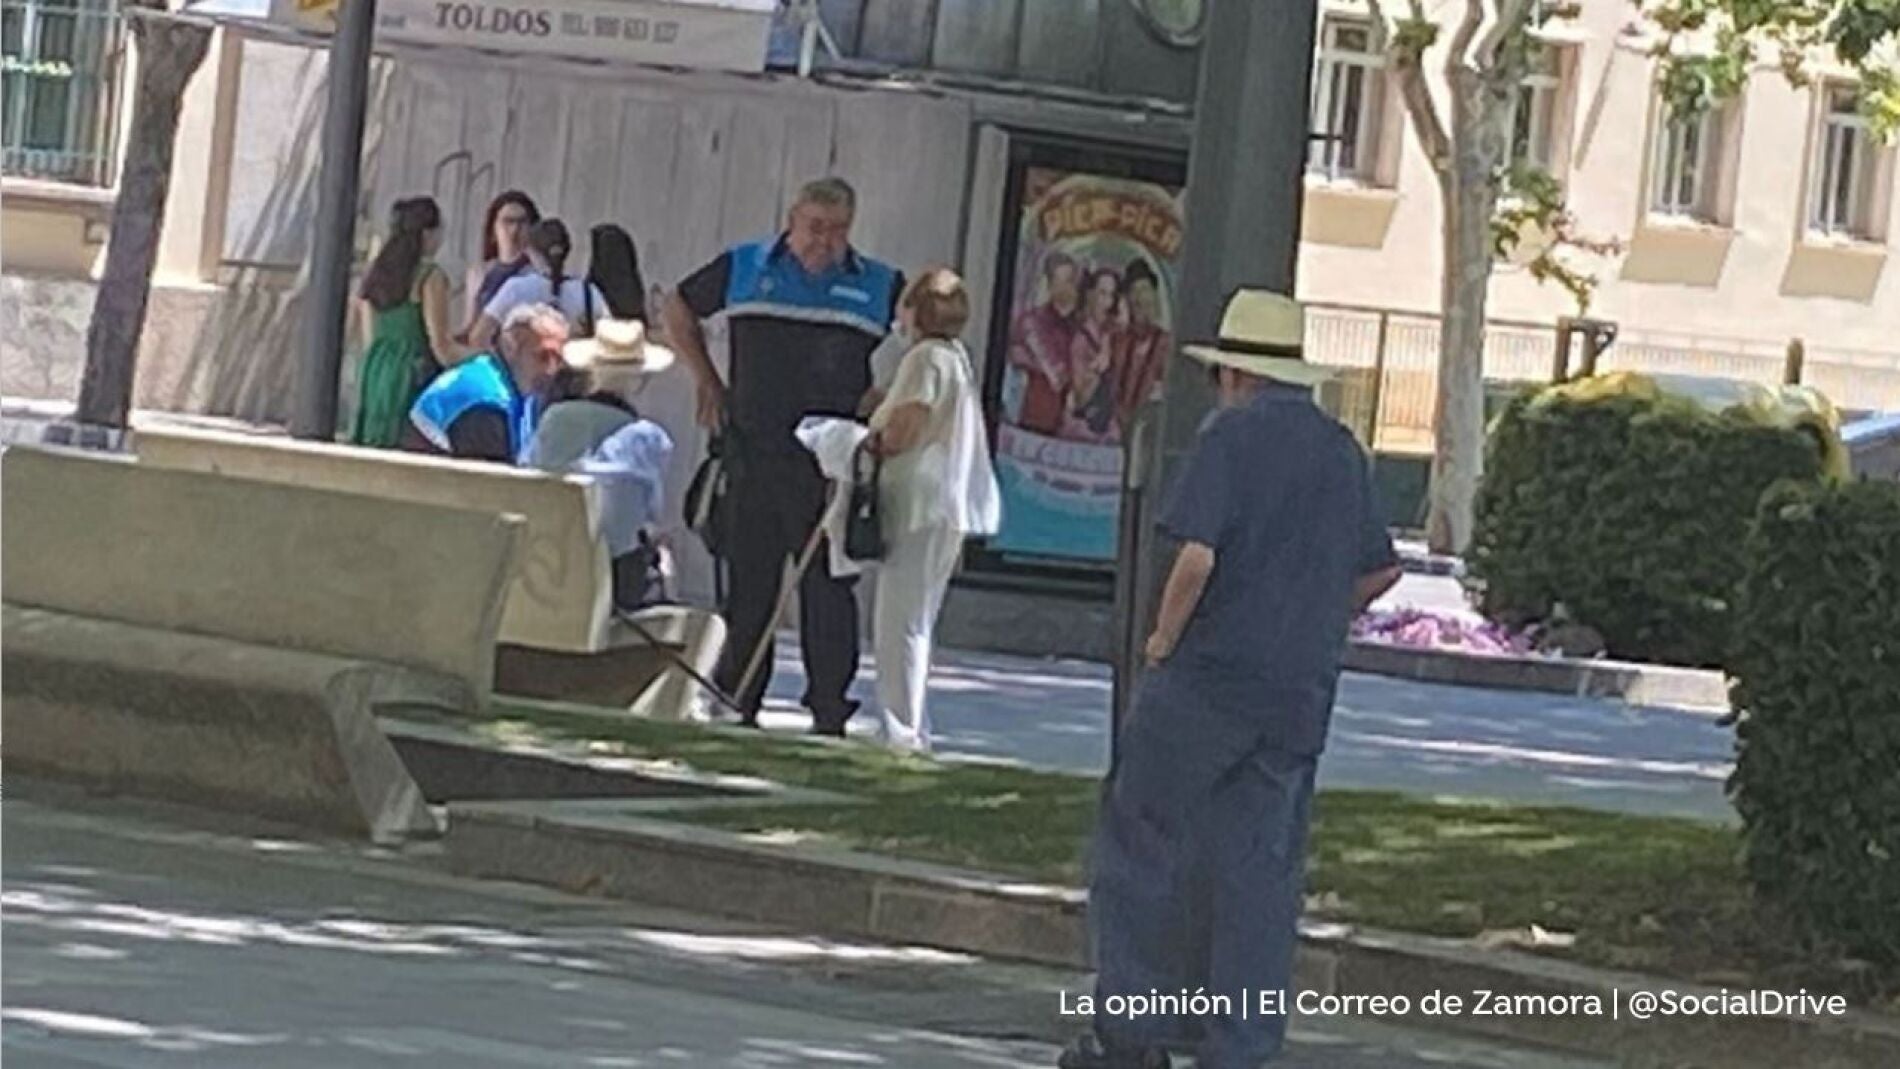 Una pareja de ancianos practica sexo oral a plena luz del día en una plaza de Zamora foto